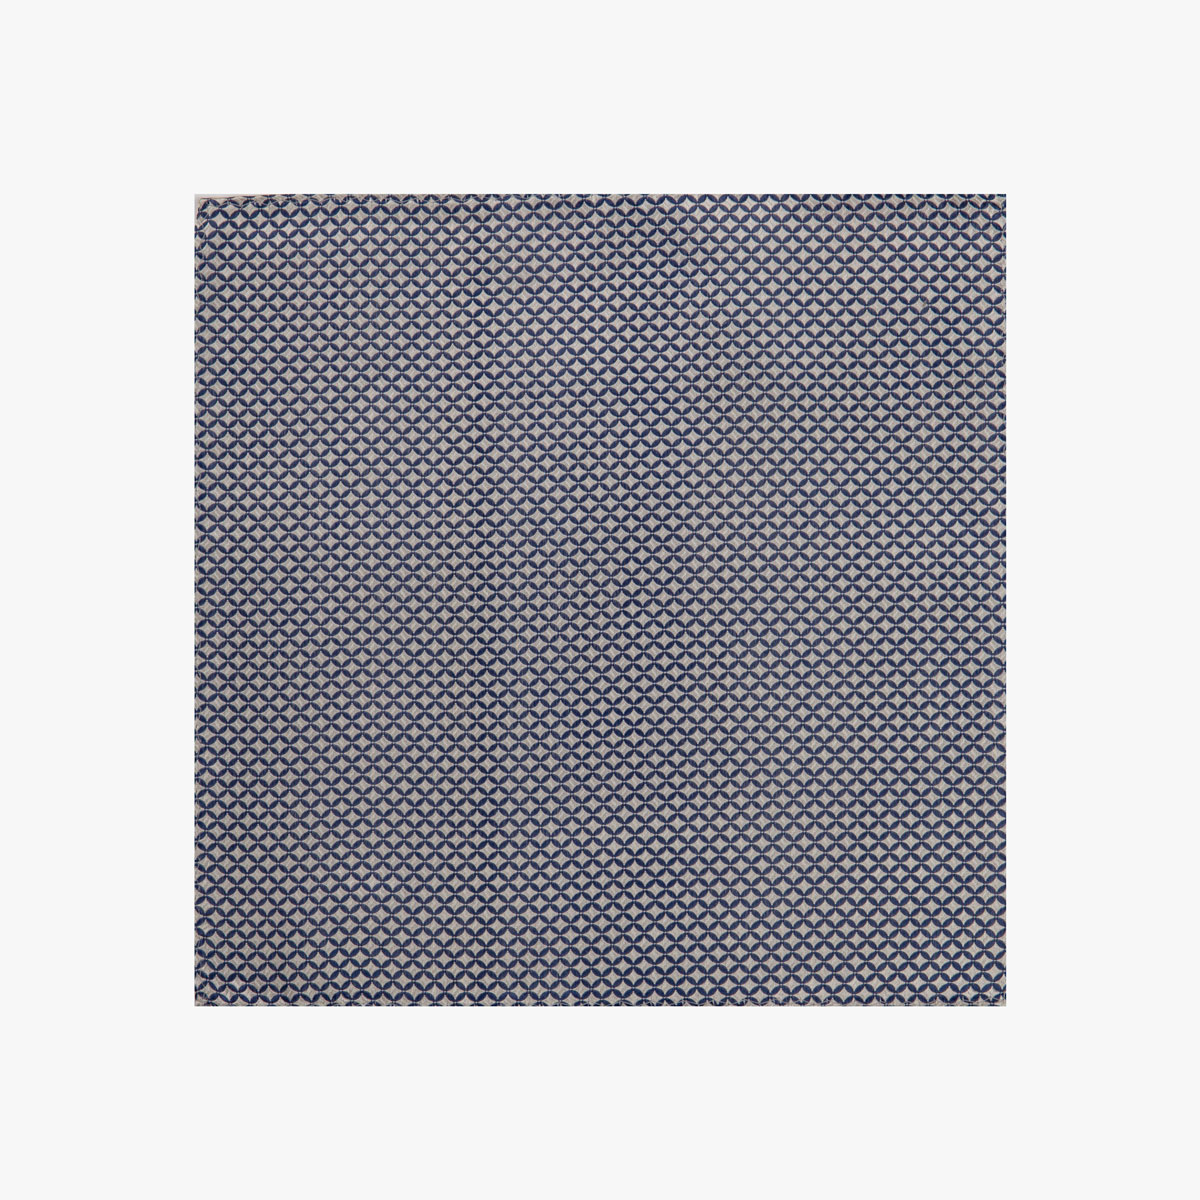 Stoff vom Einstecktuch mit geometrischen Muster in beige-blau